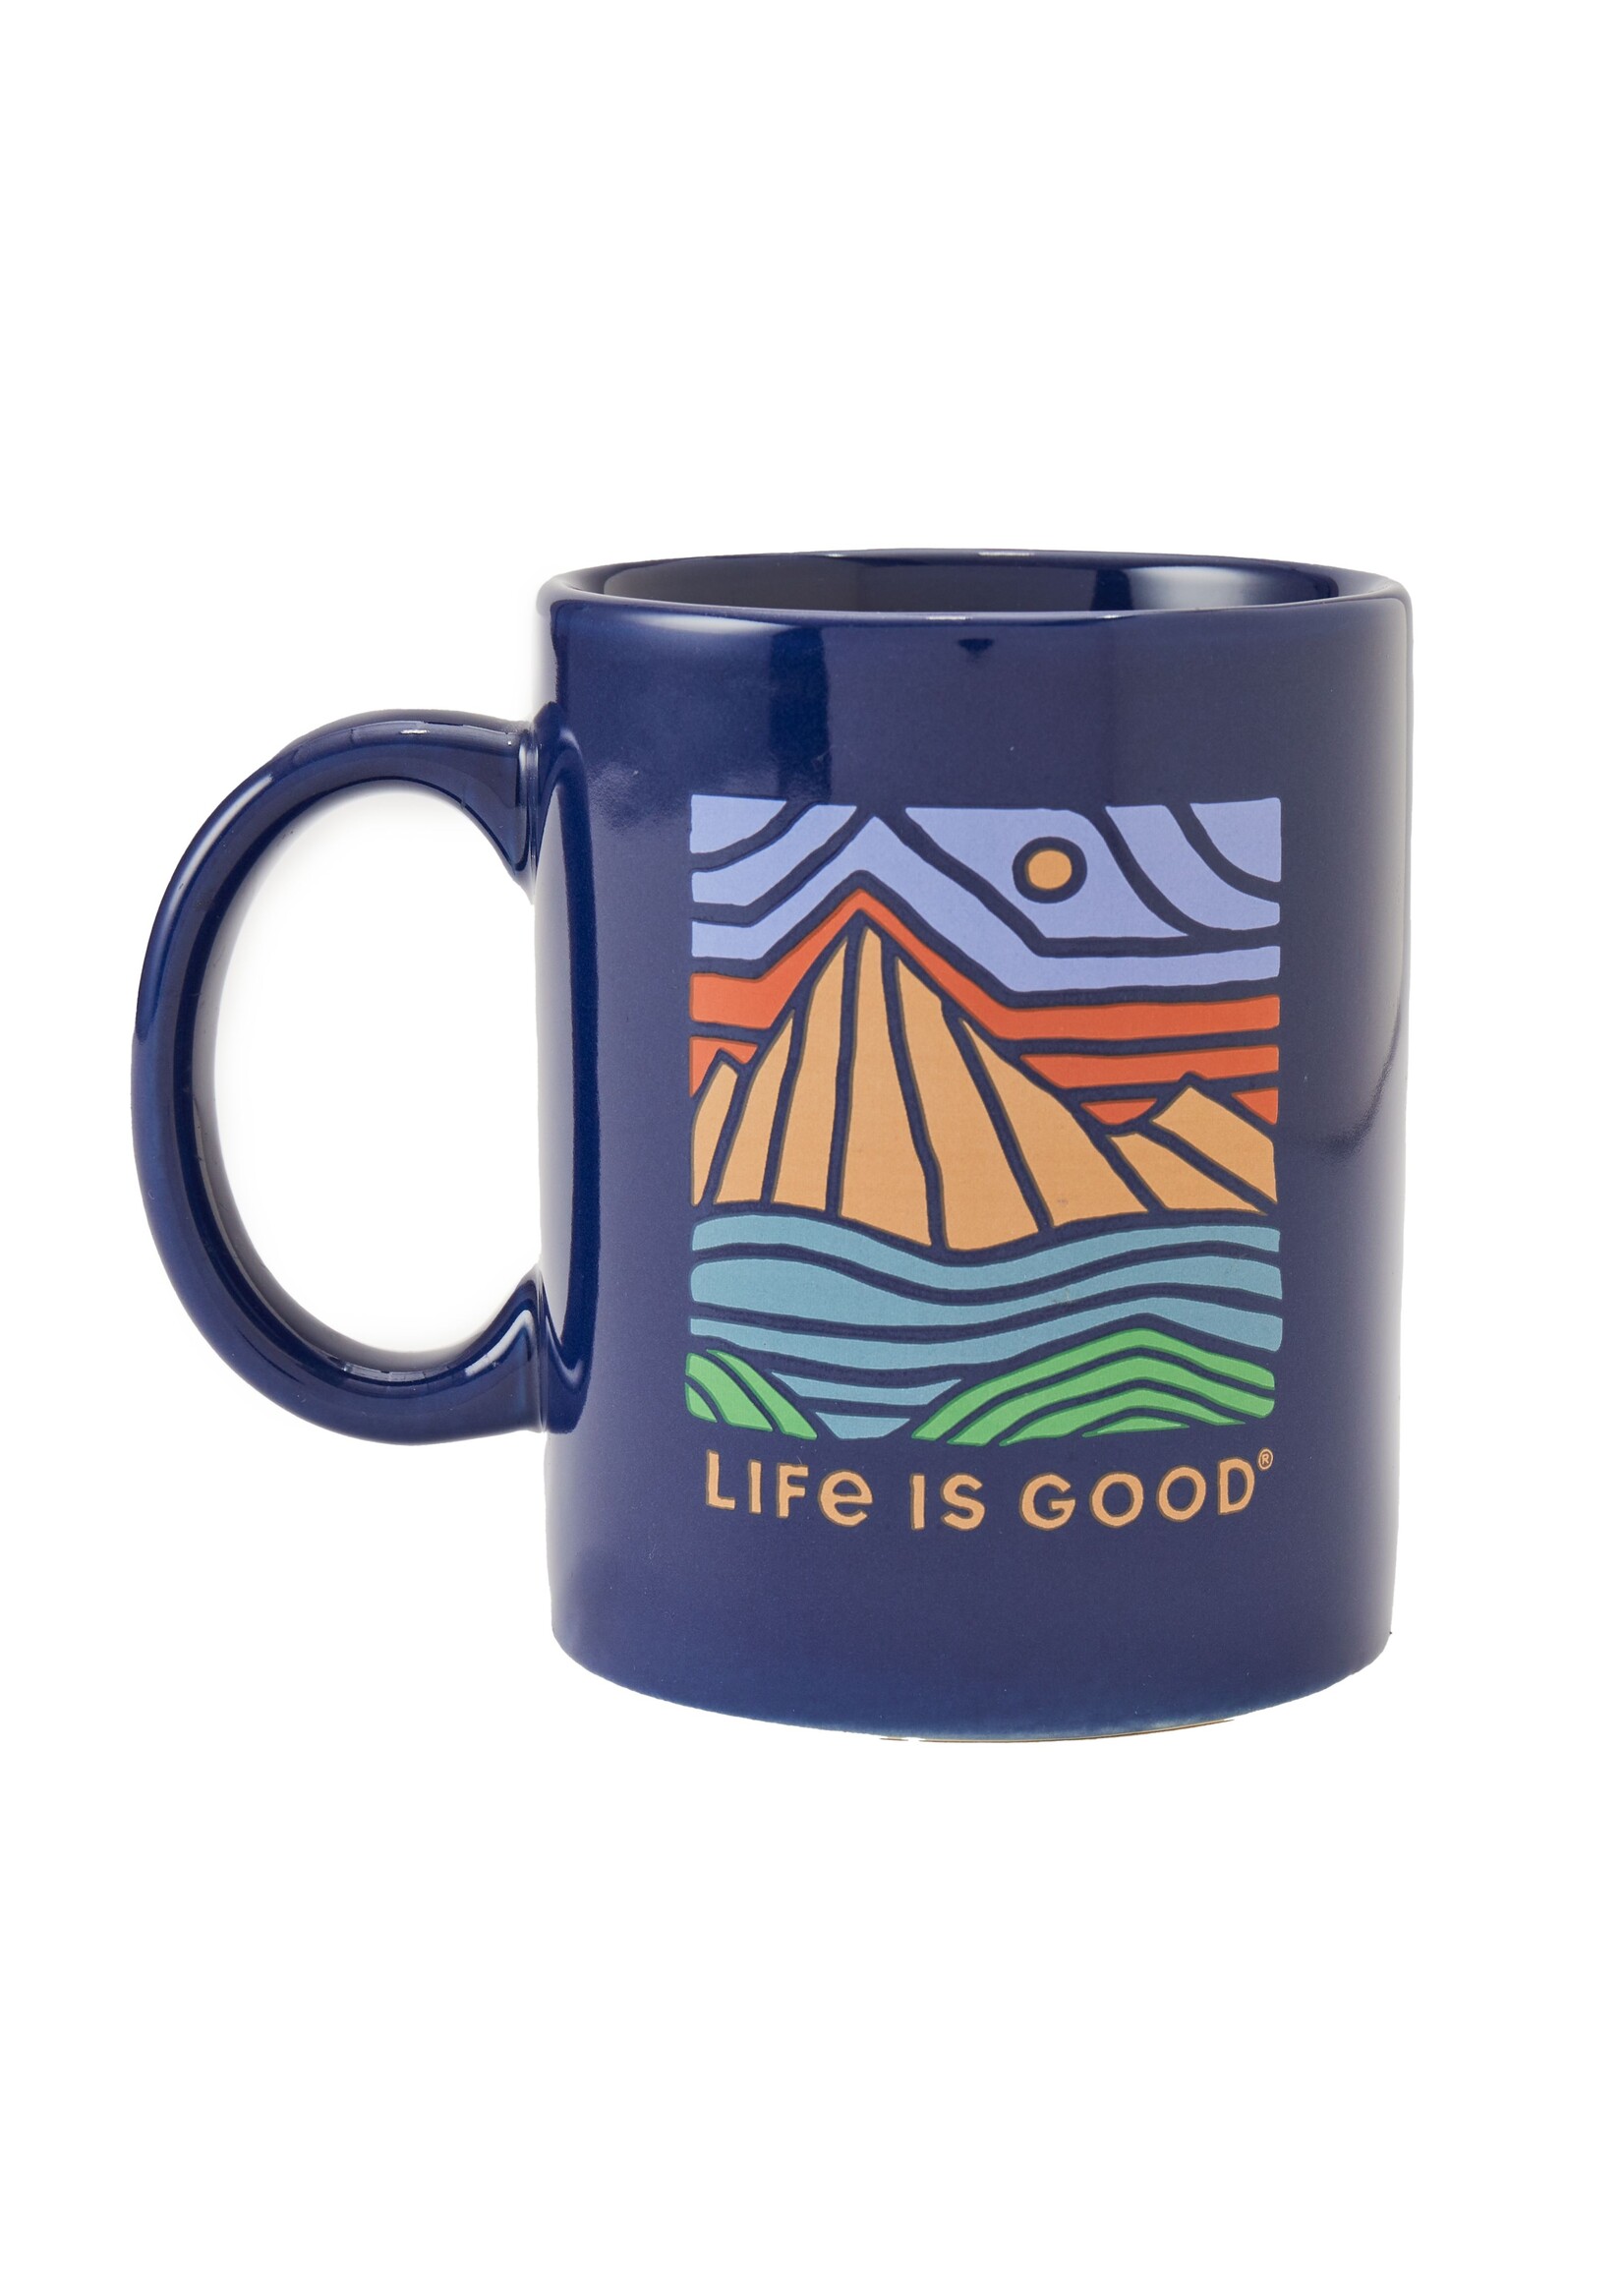 Life is Good Life is Good Jake's Mug; New!